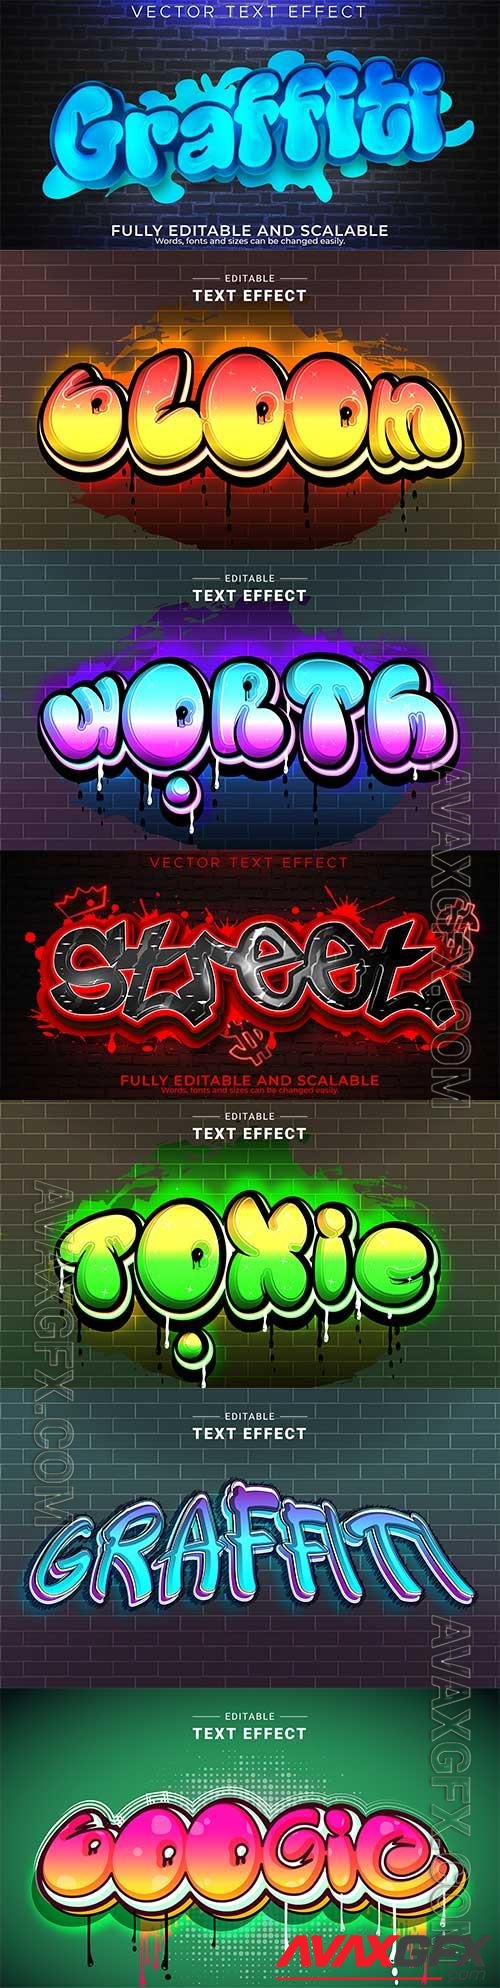 Graffiti street text effect vector